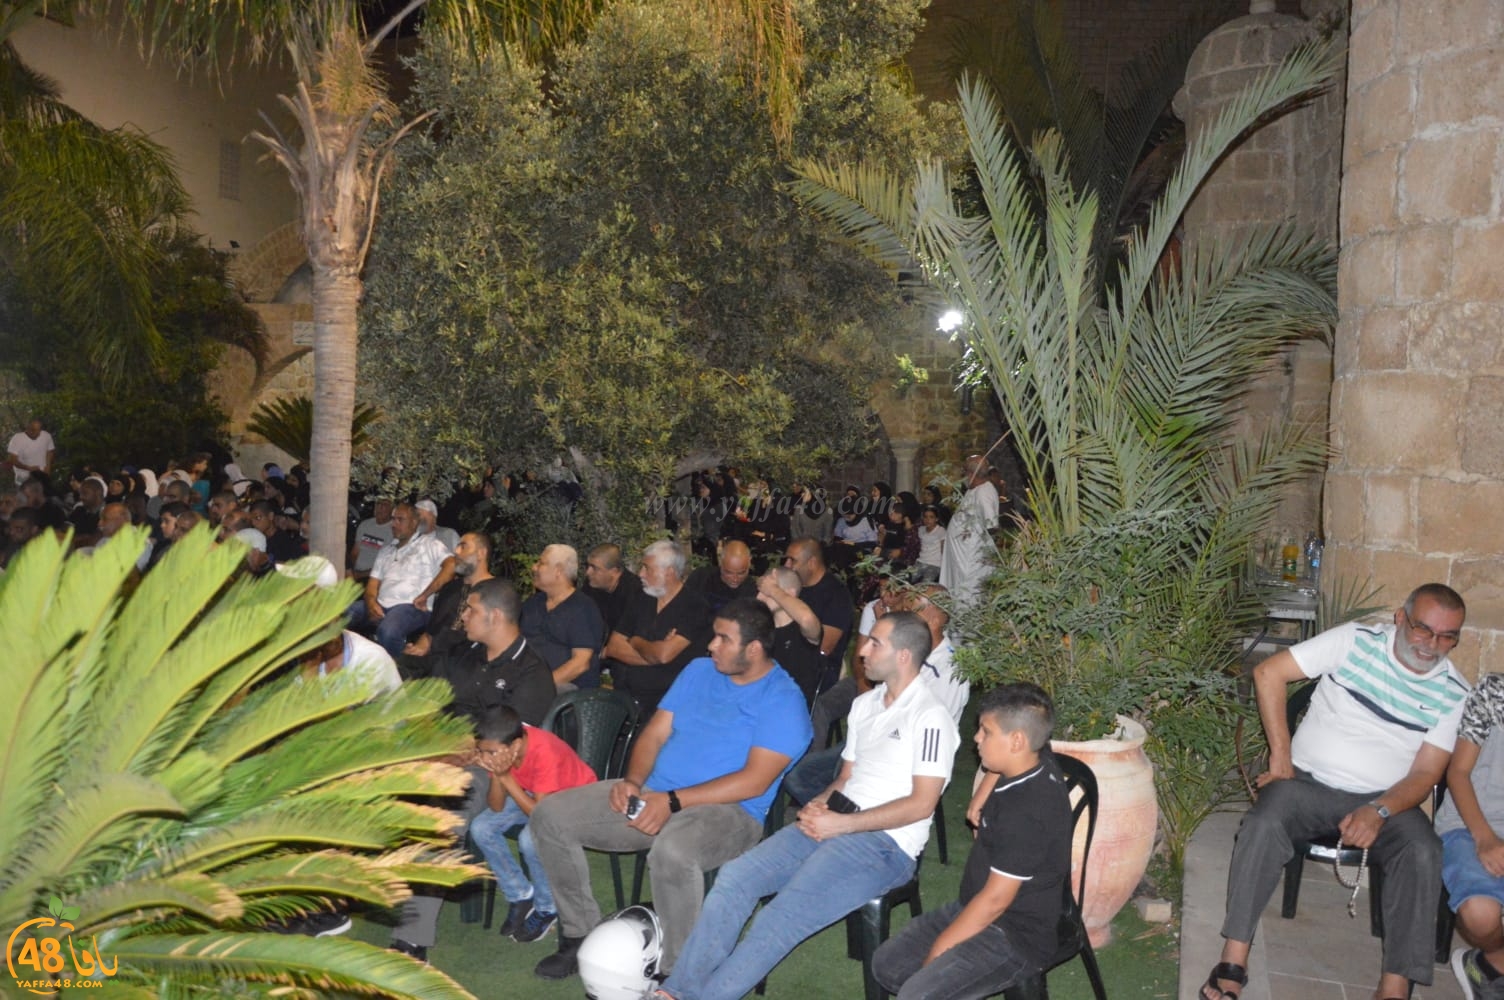 بالصور: لجنة تيسير الحج والعمرة بيافا تُنظم احتفالاً لتوديع حجاج بيت الله الحرام